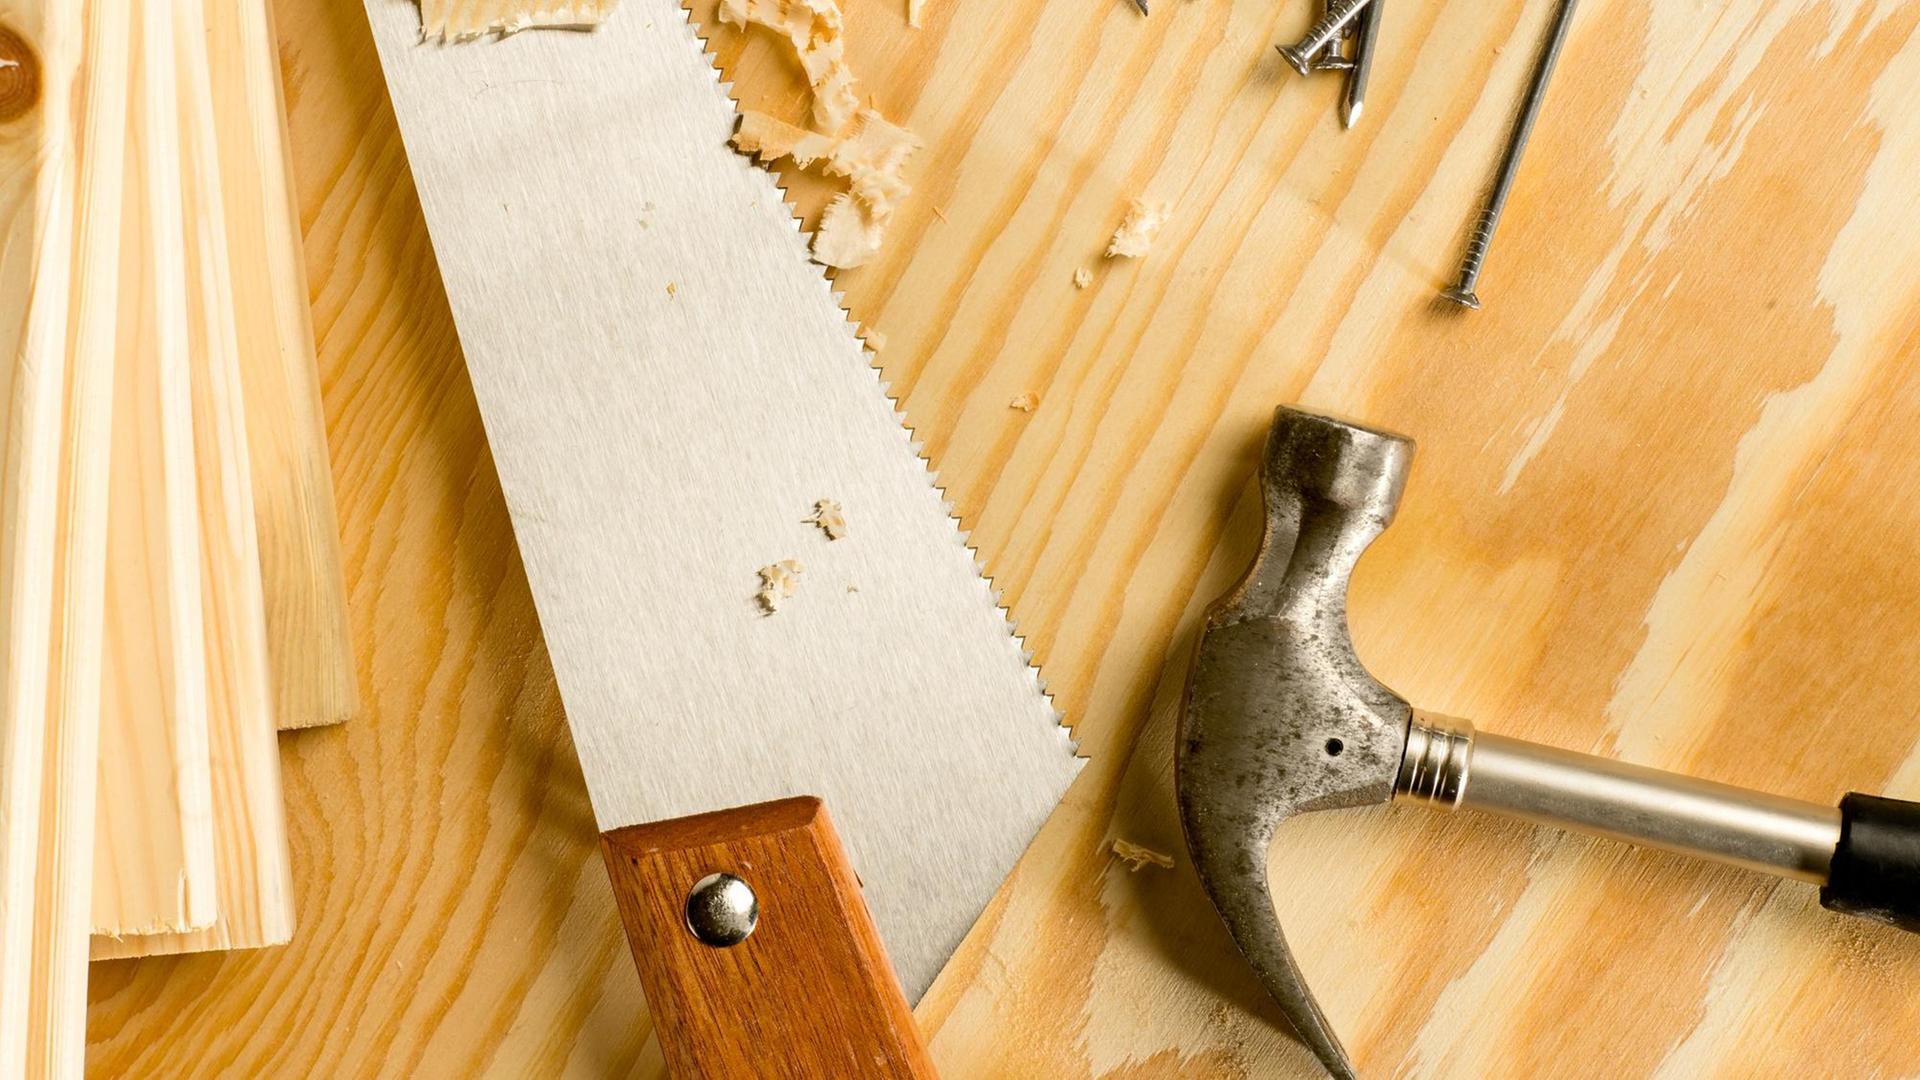 Säge, Hammer, Nägel: Werkzeuge für die Holzbearbeitung